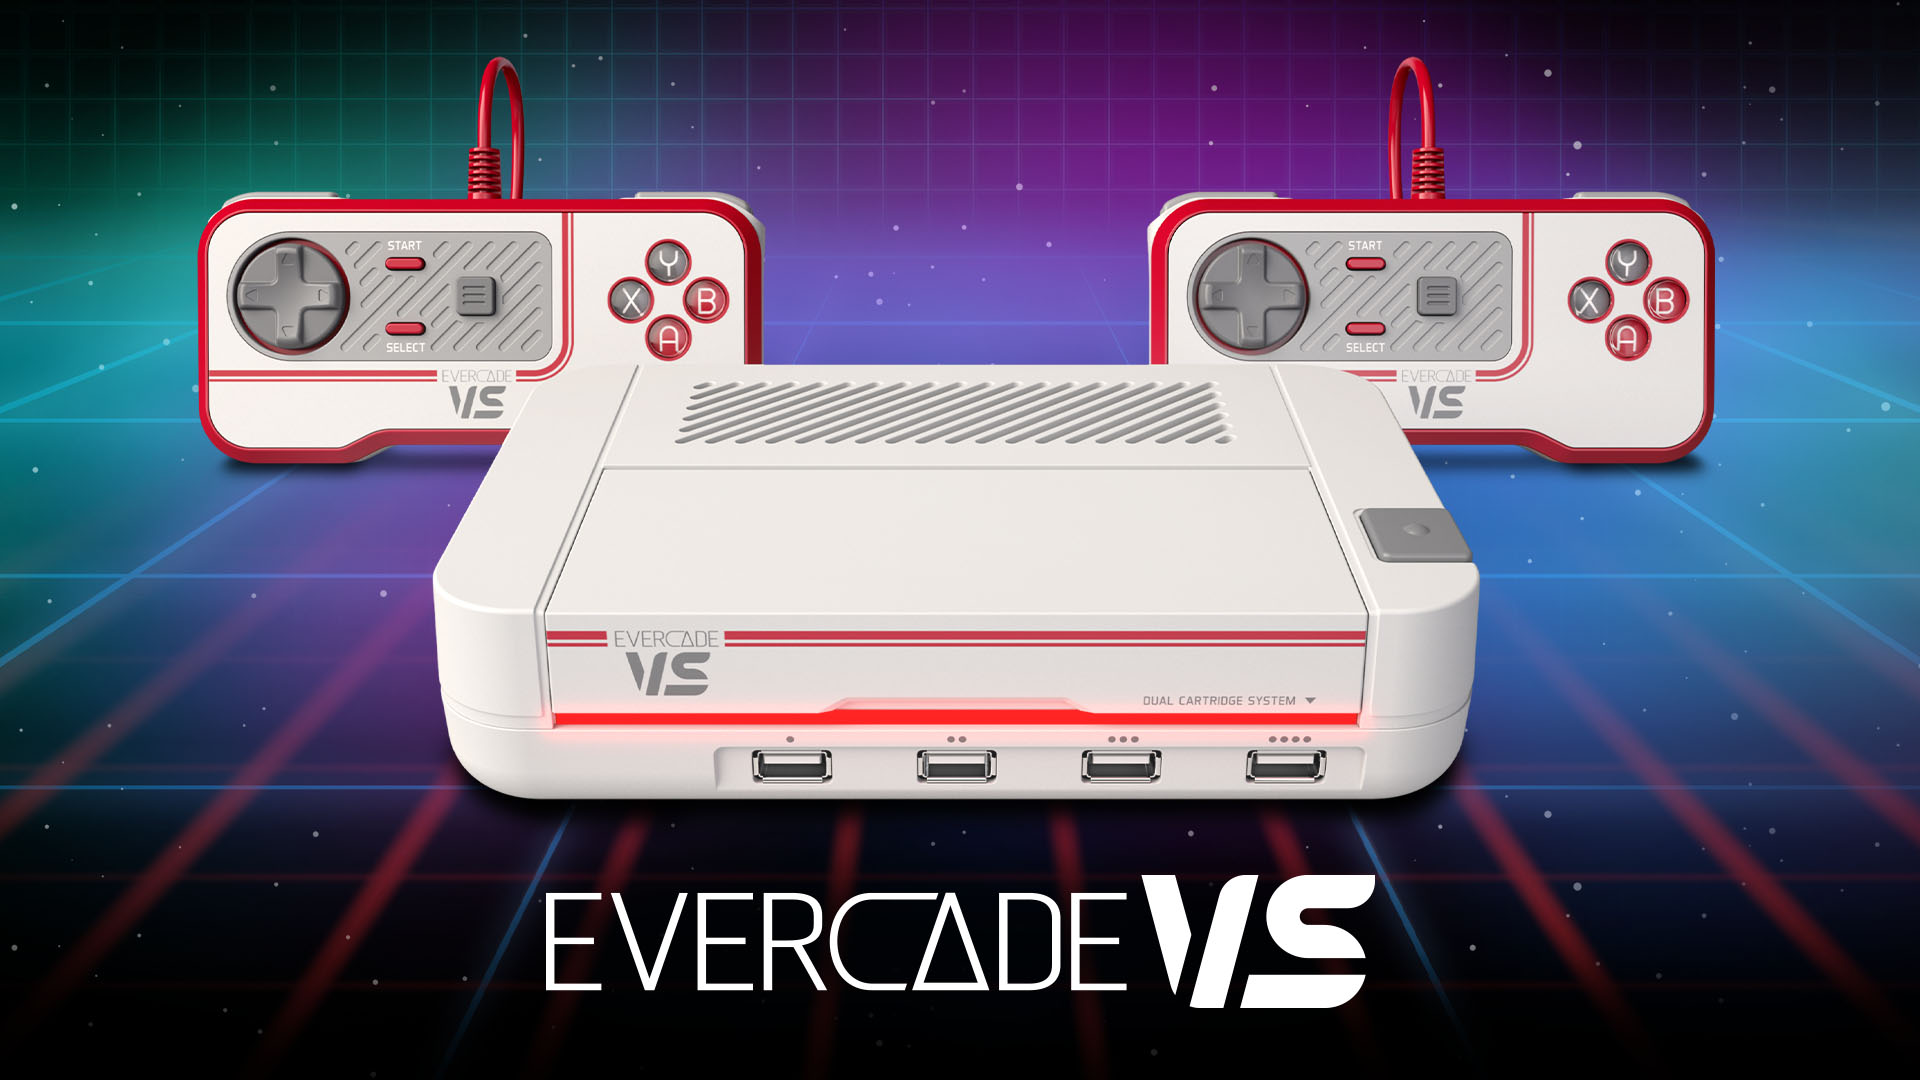 Evercade VS la nueva consola de sobremesa de Blaze Entertainment